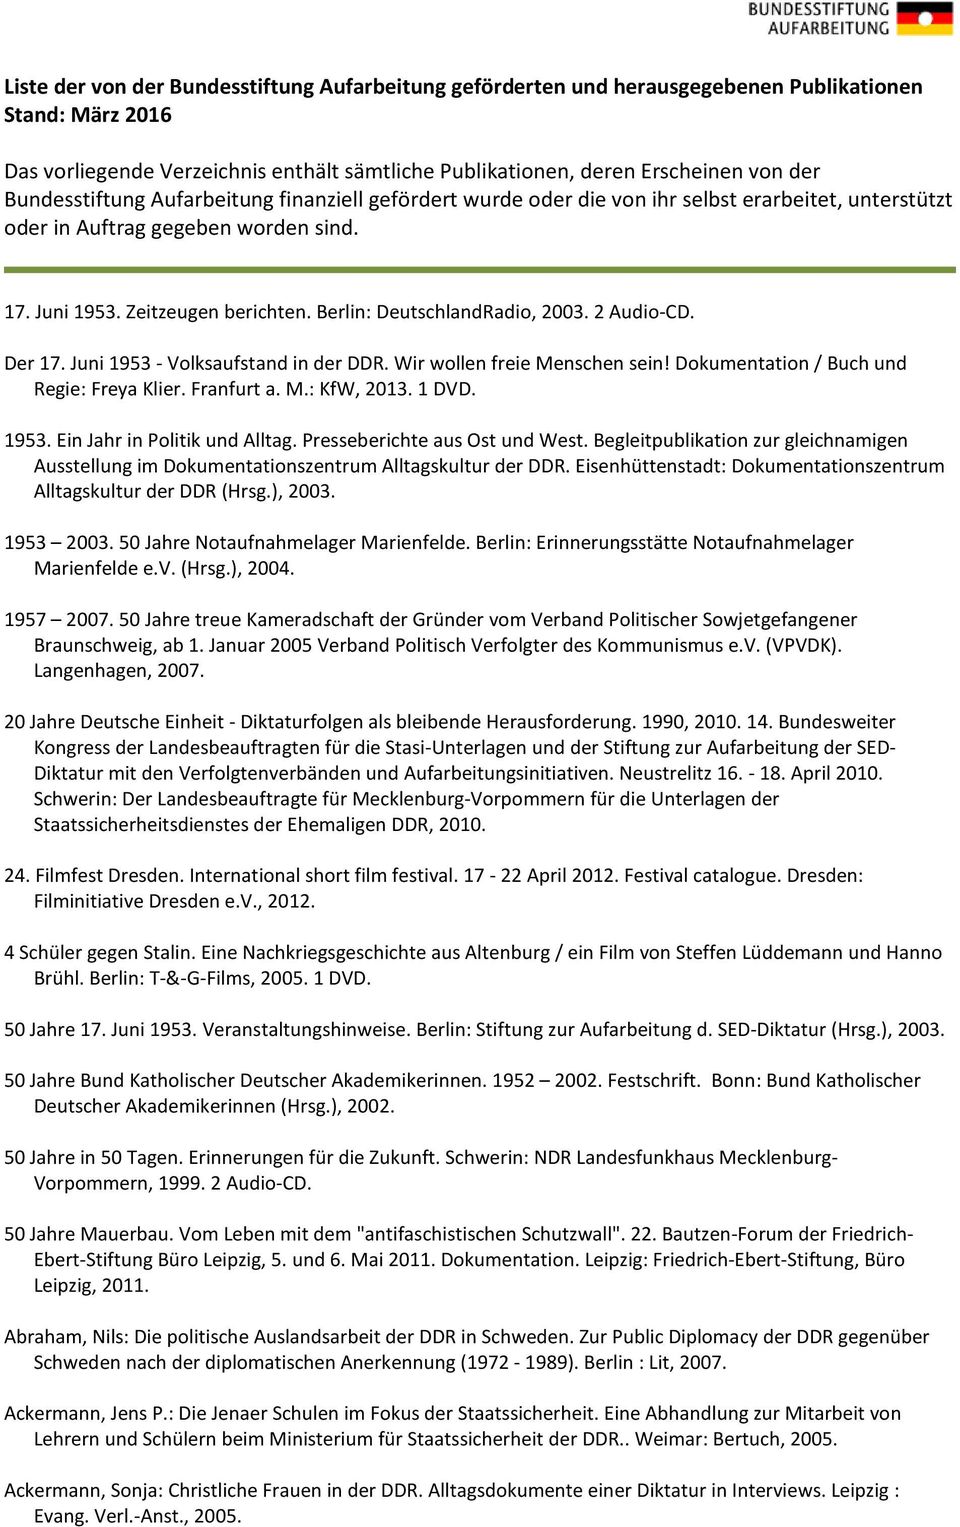 Berlin: DeutschlandRadio, 2003. 2 Audio-CD. Der 17. Juni 1953 - Volksaufstand in der DDR. Wir wollen freie Menschen sein! Dokumentation / Buch und Regie: Freya Klier. Franfurt a. M.: KfW, 2013. 1 DVD.